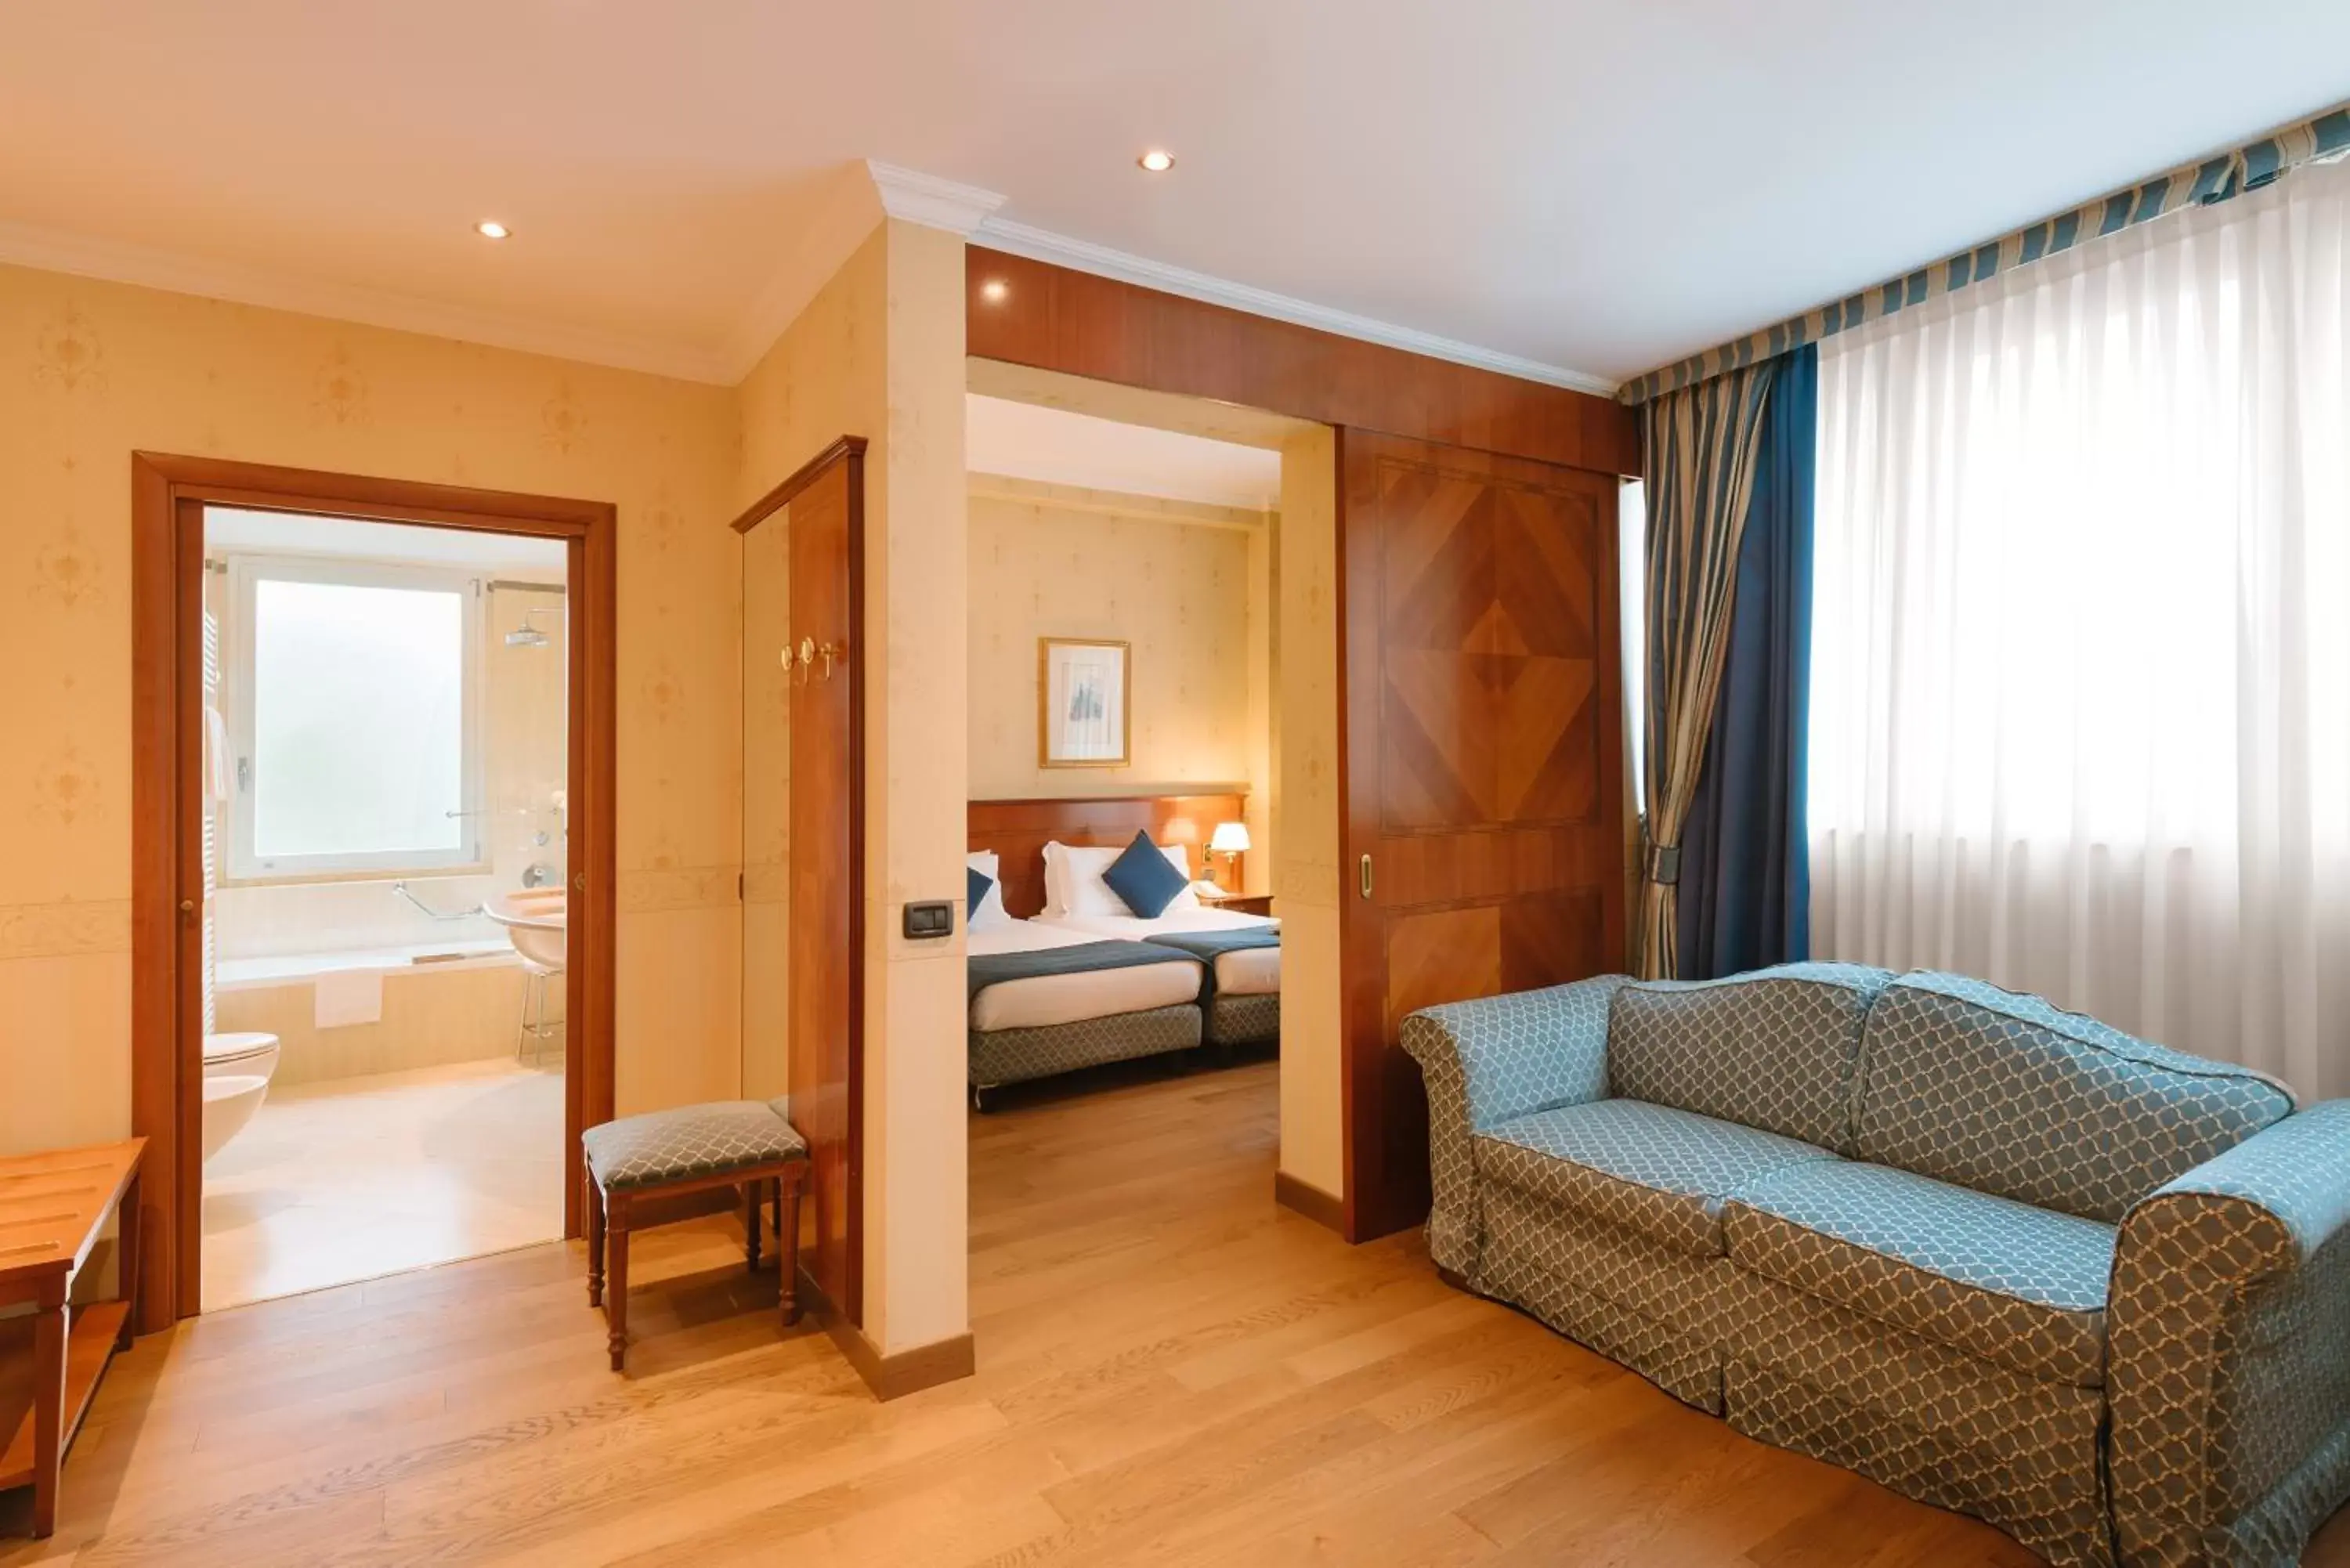 Bed, Room Photo in Windsor Hotel Milano